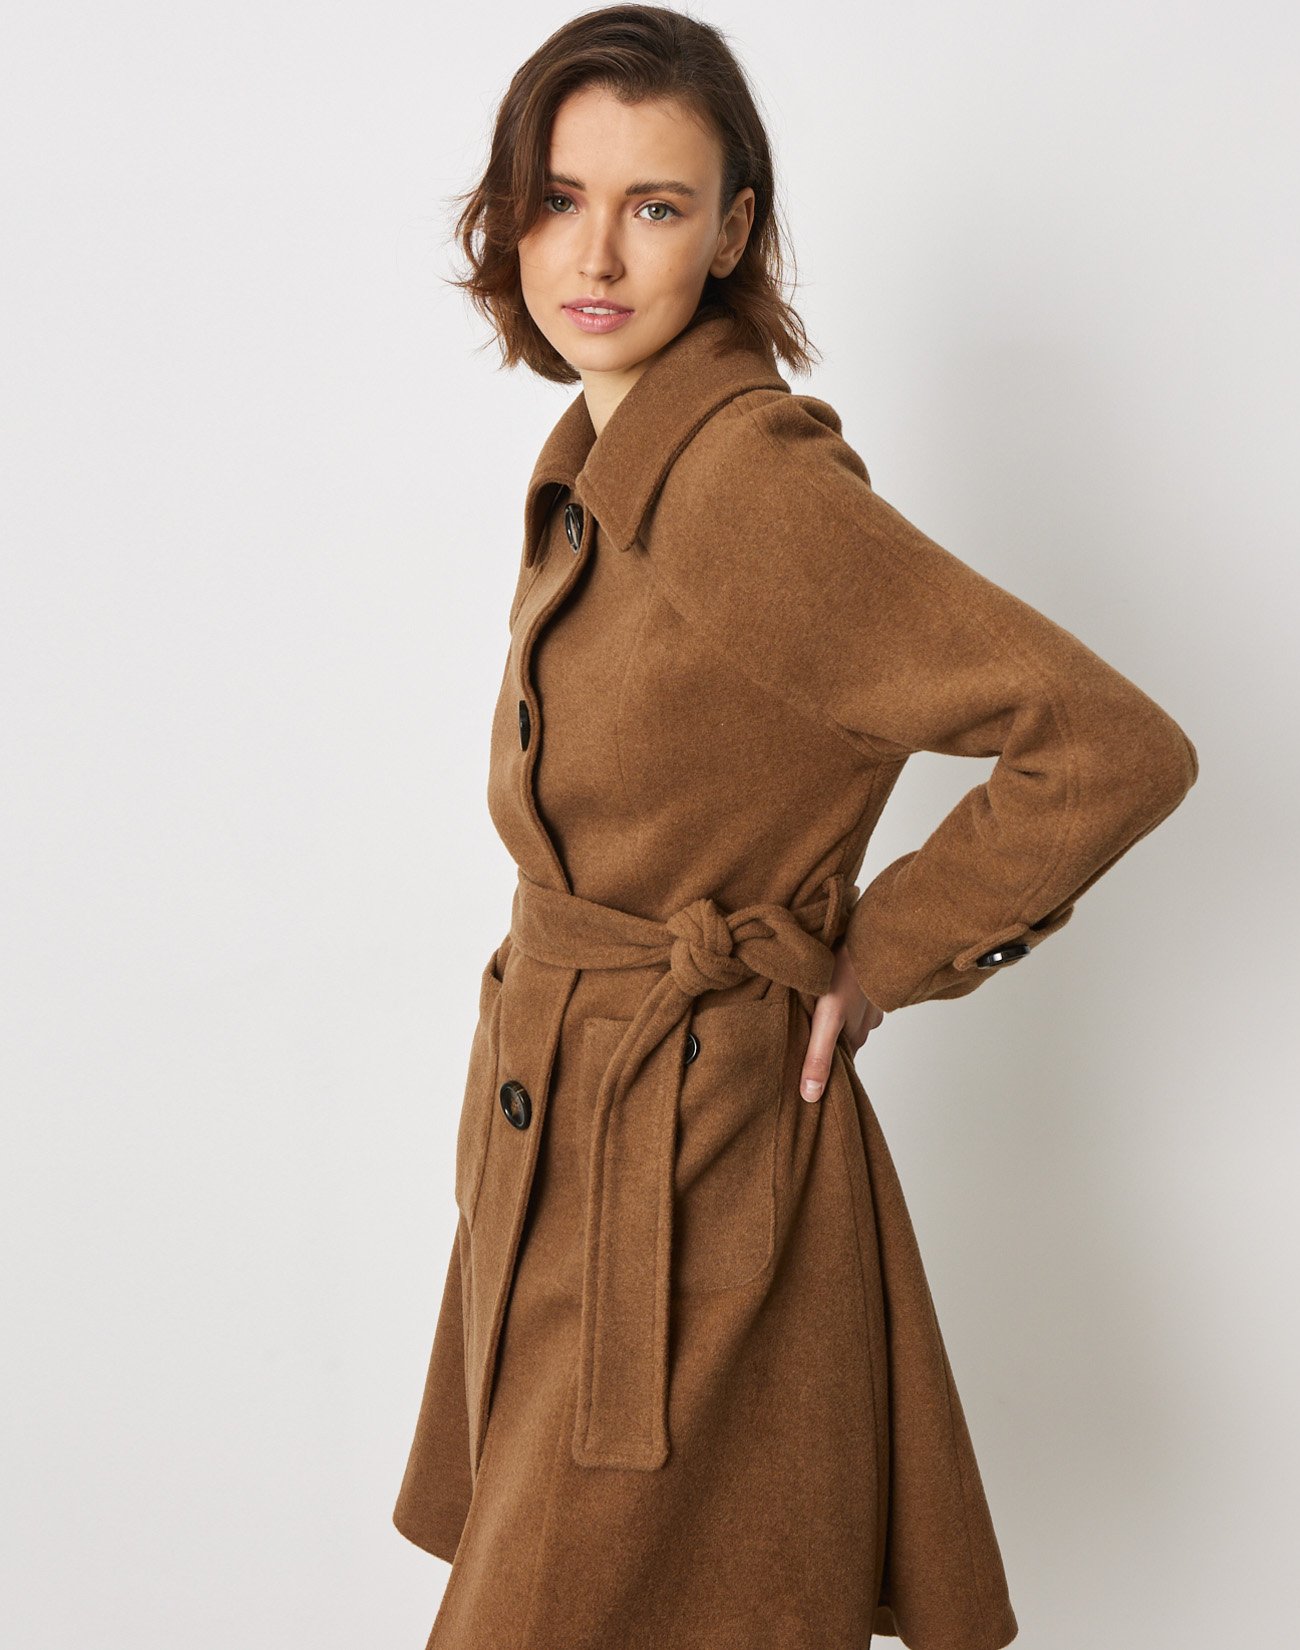 Wool blend coat